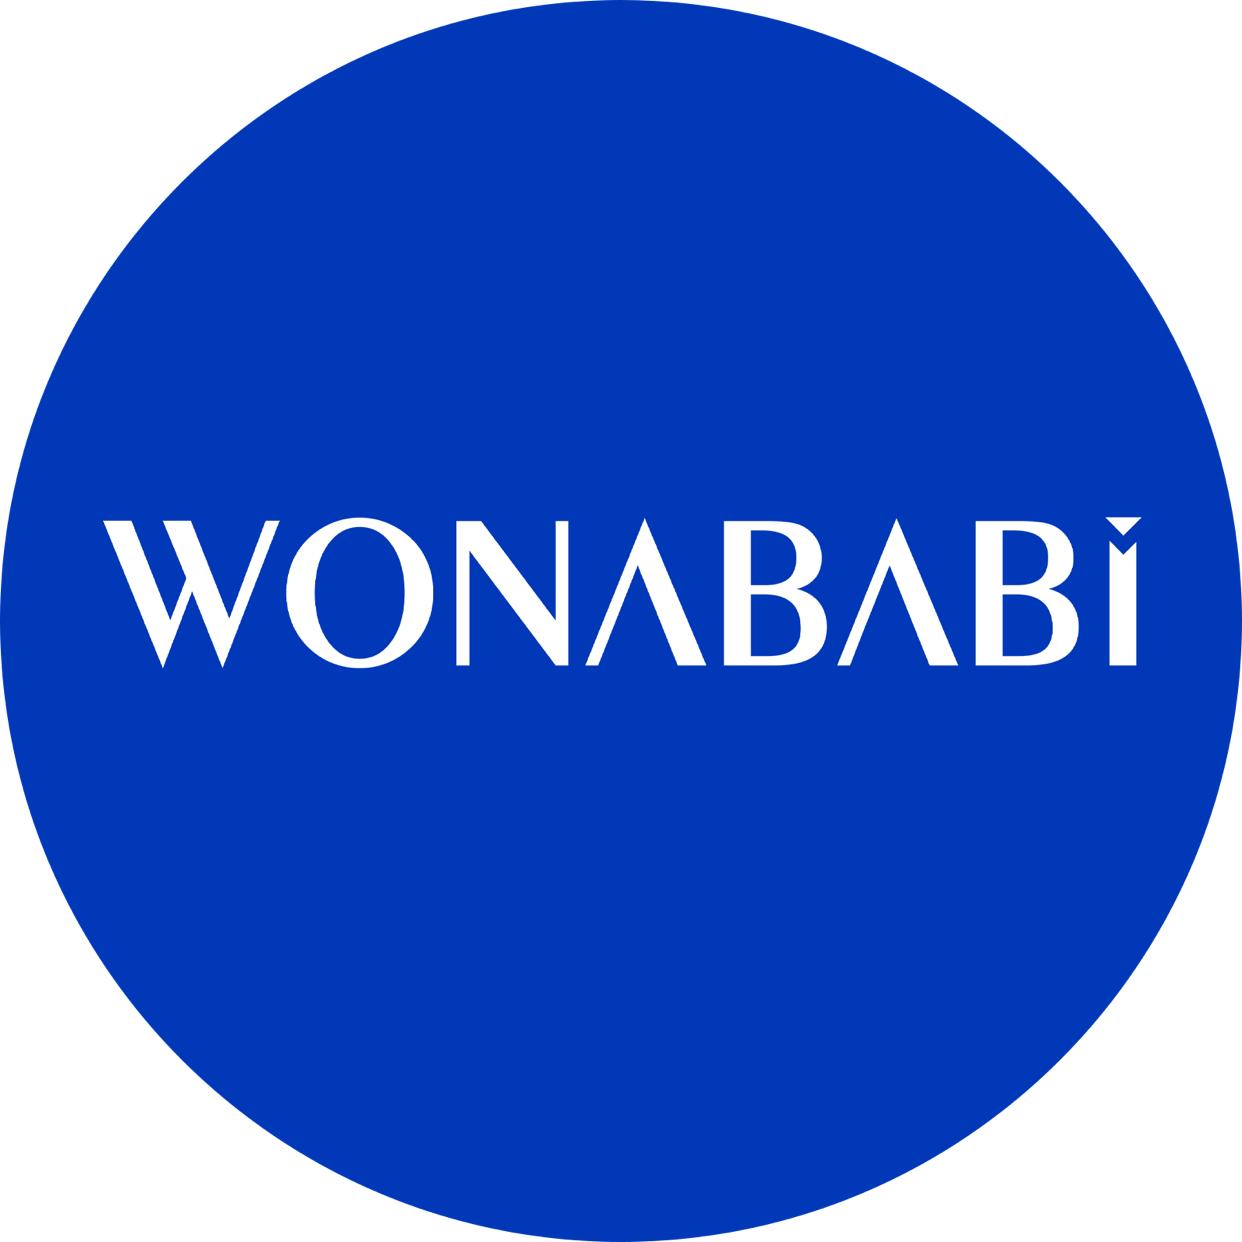 Wonababi's images